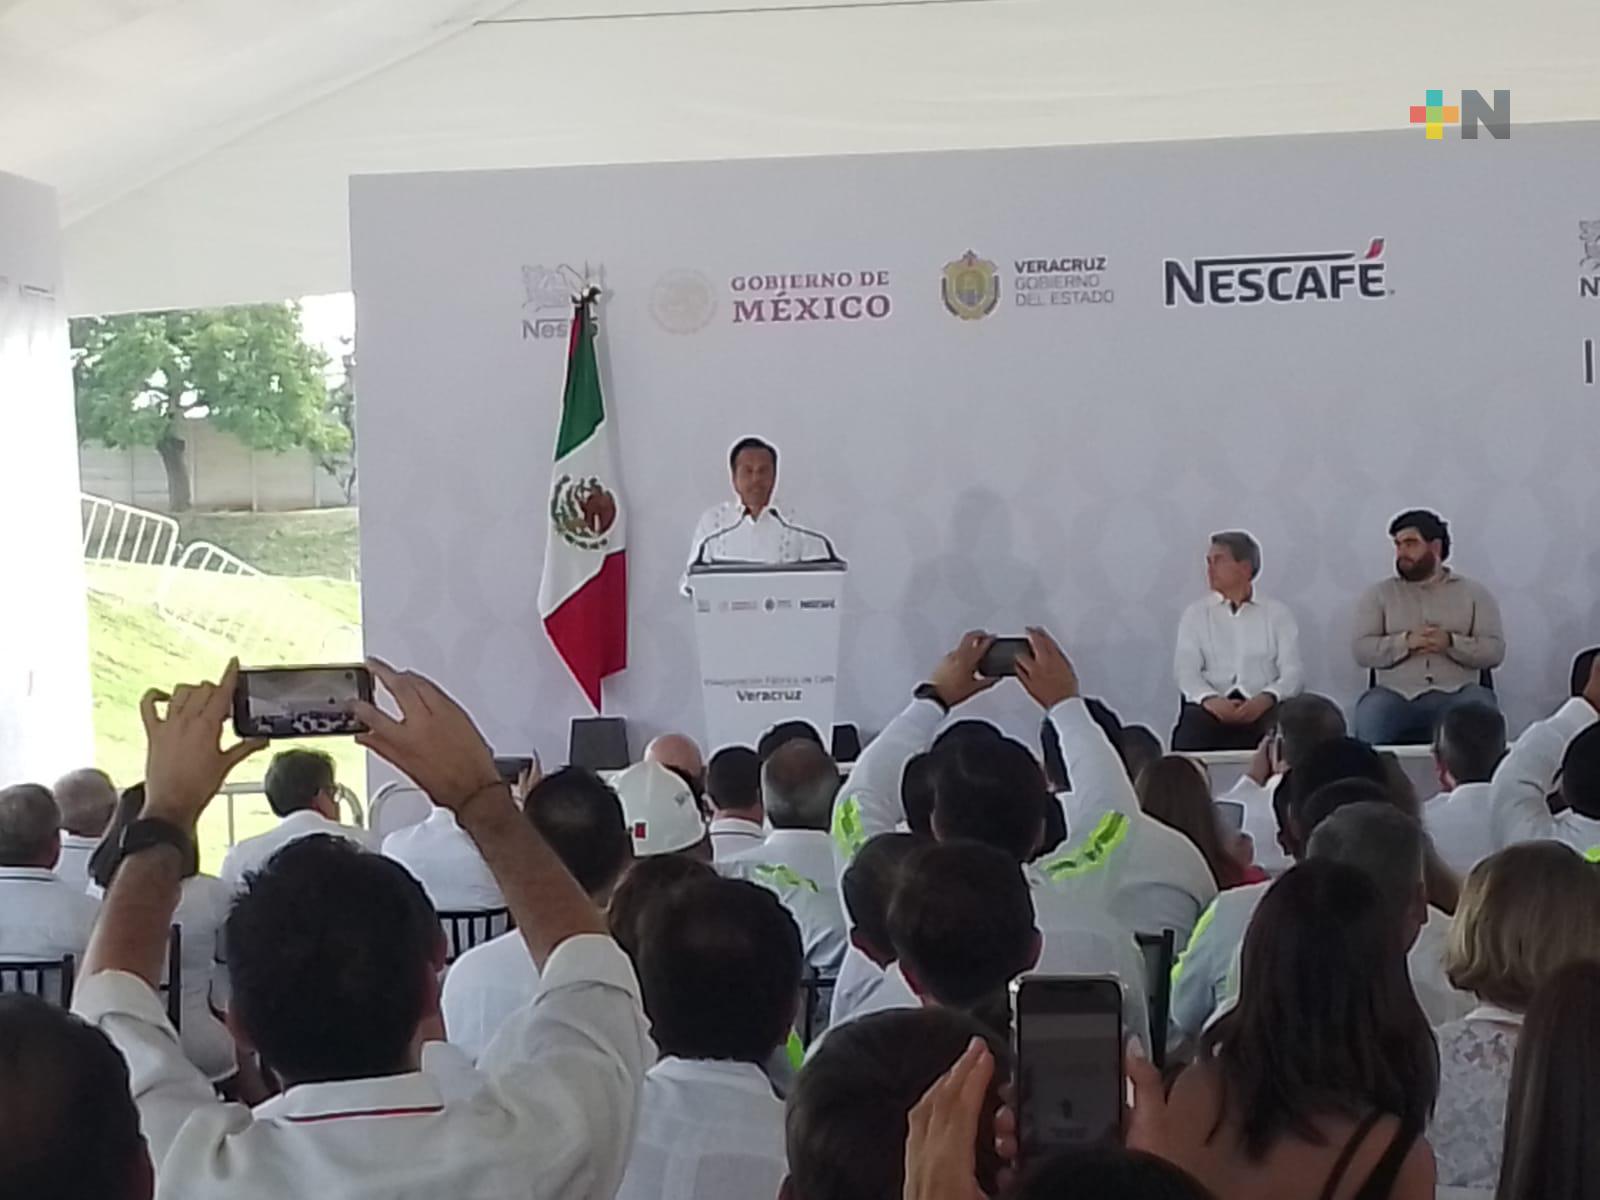 El Presidente hizo posible la llegada de planta procesadora de Nestlé a la entidad veracruzana: Cuitláhuac García